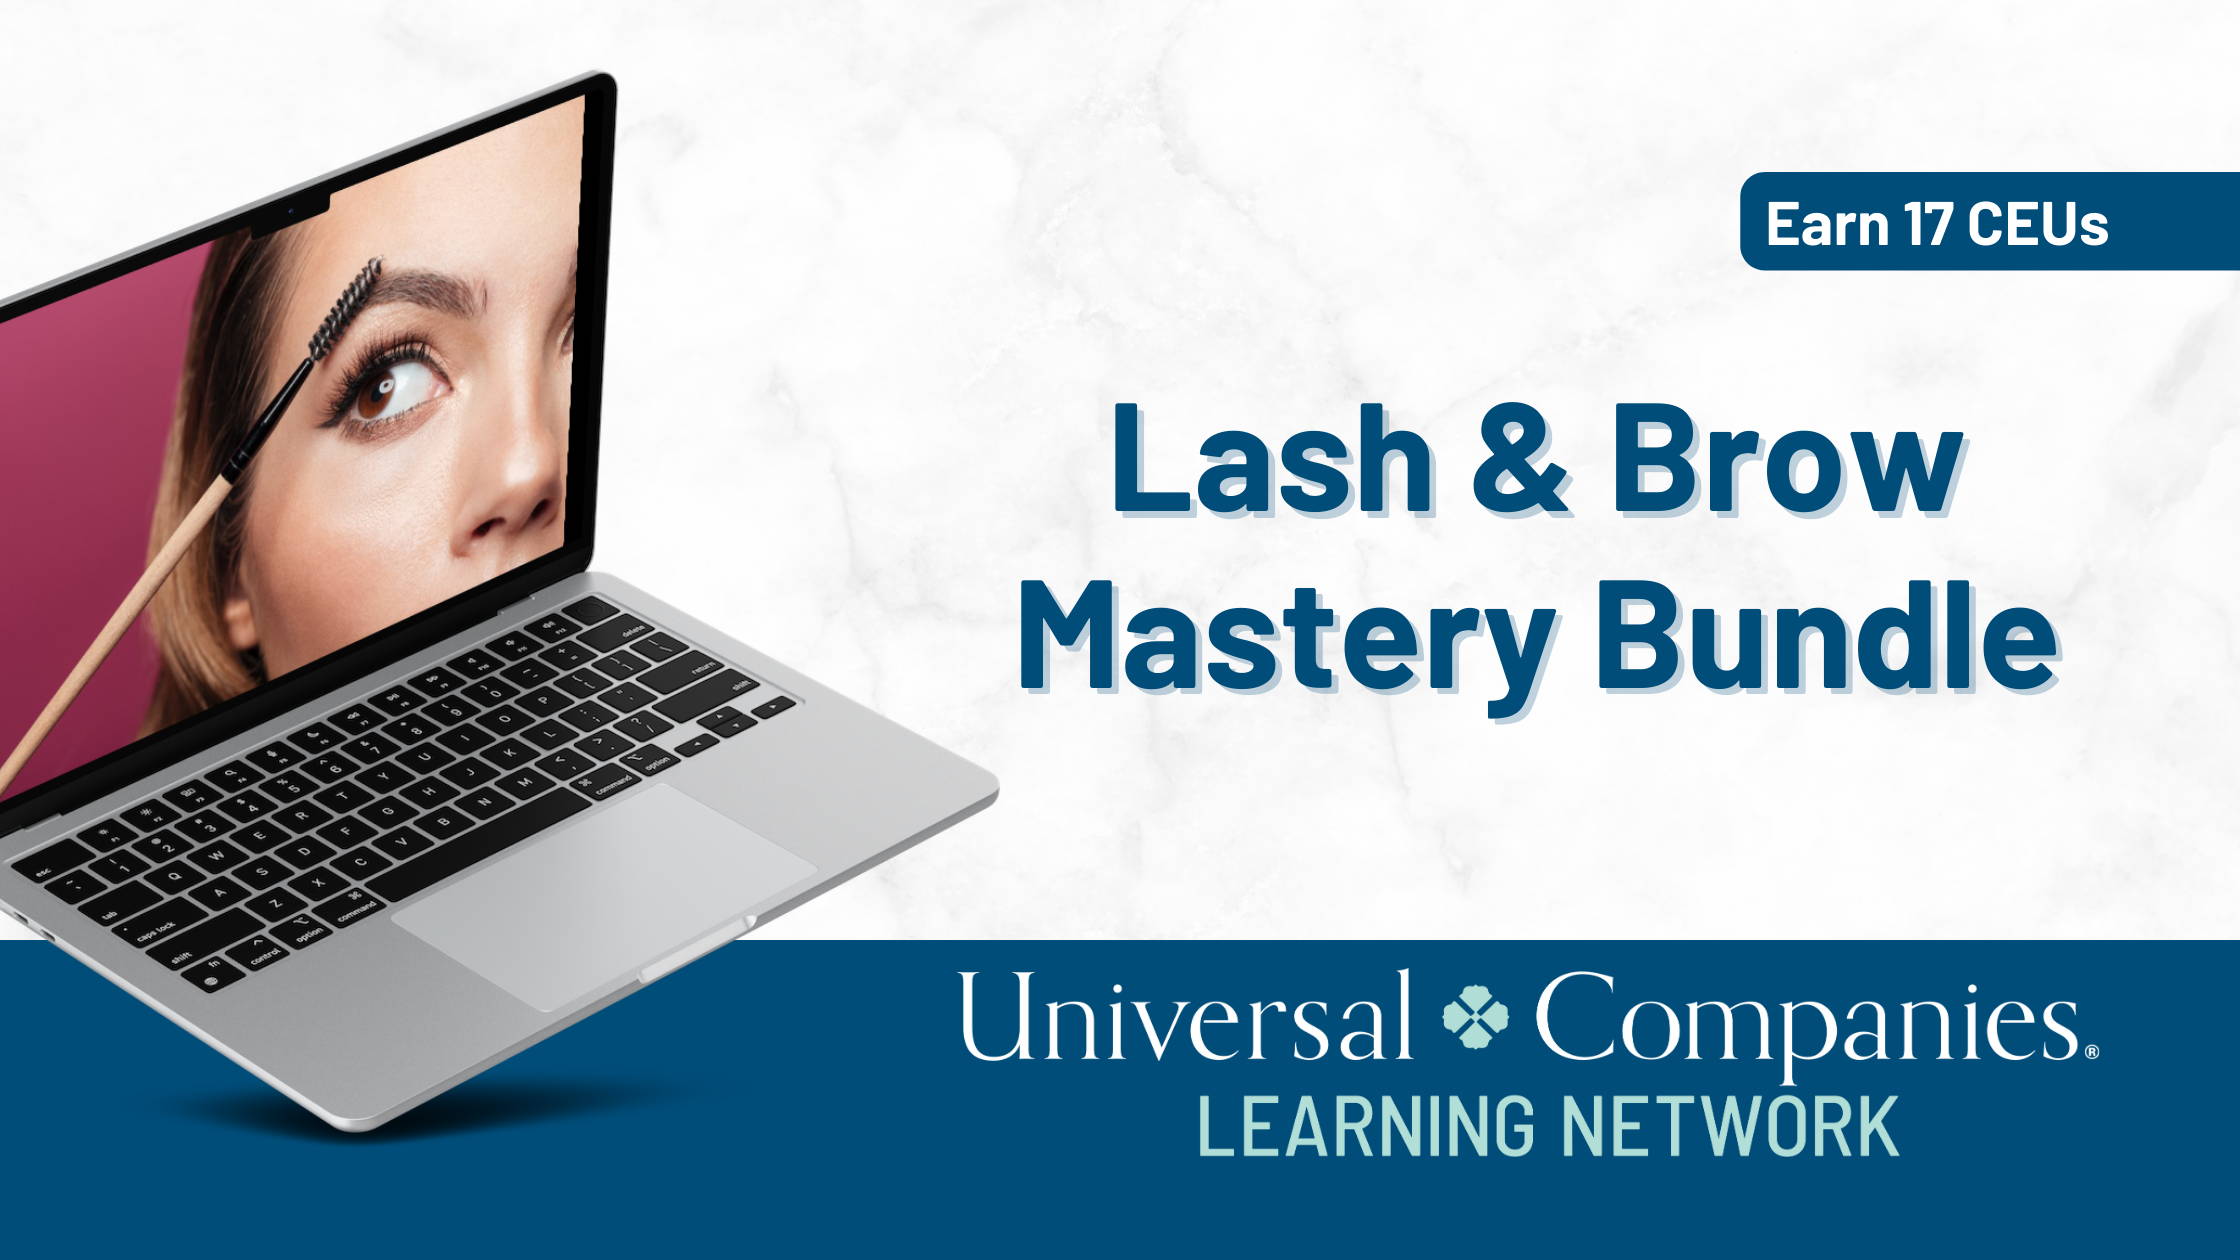 Lash & Brow Mastery Bundle